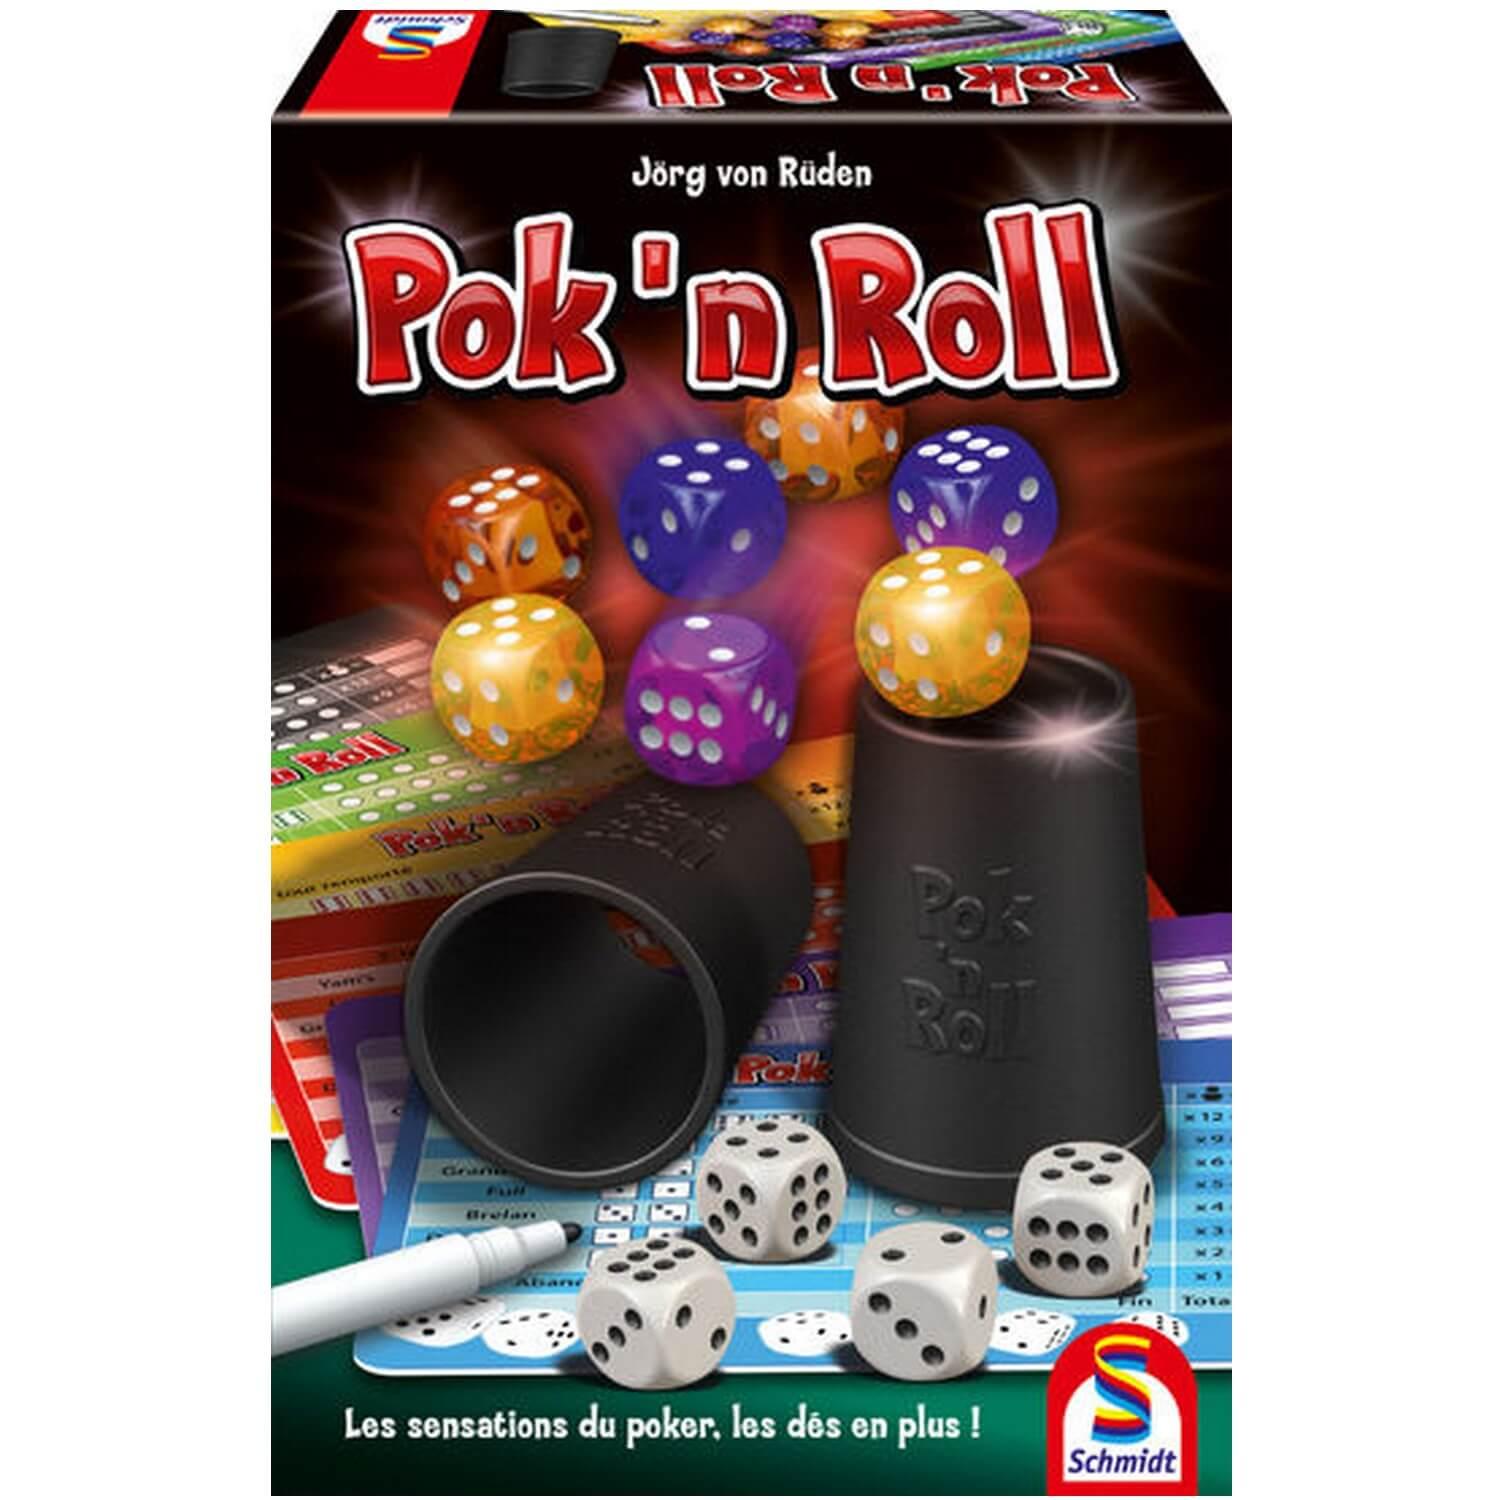 Pok'n'Roll